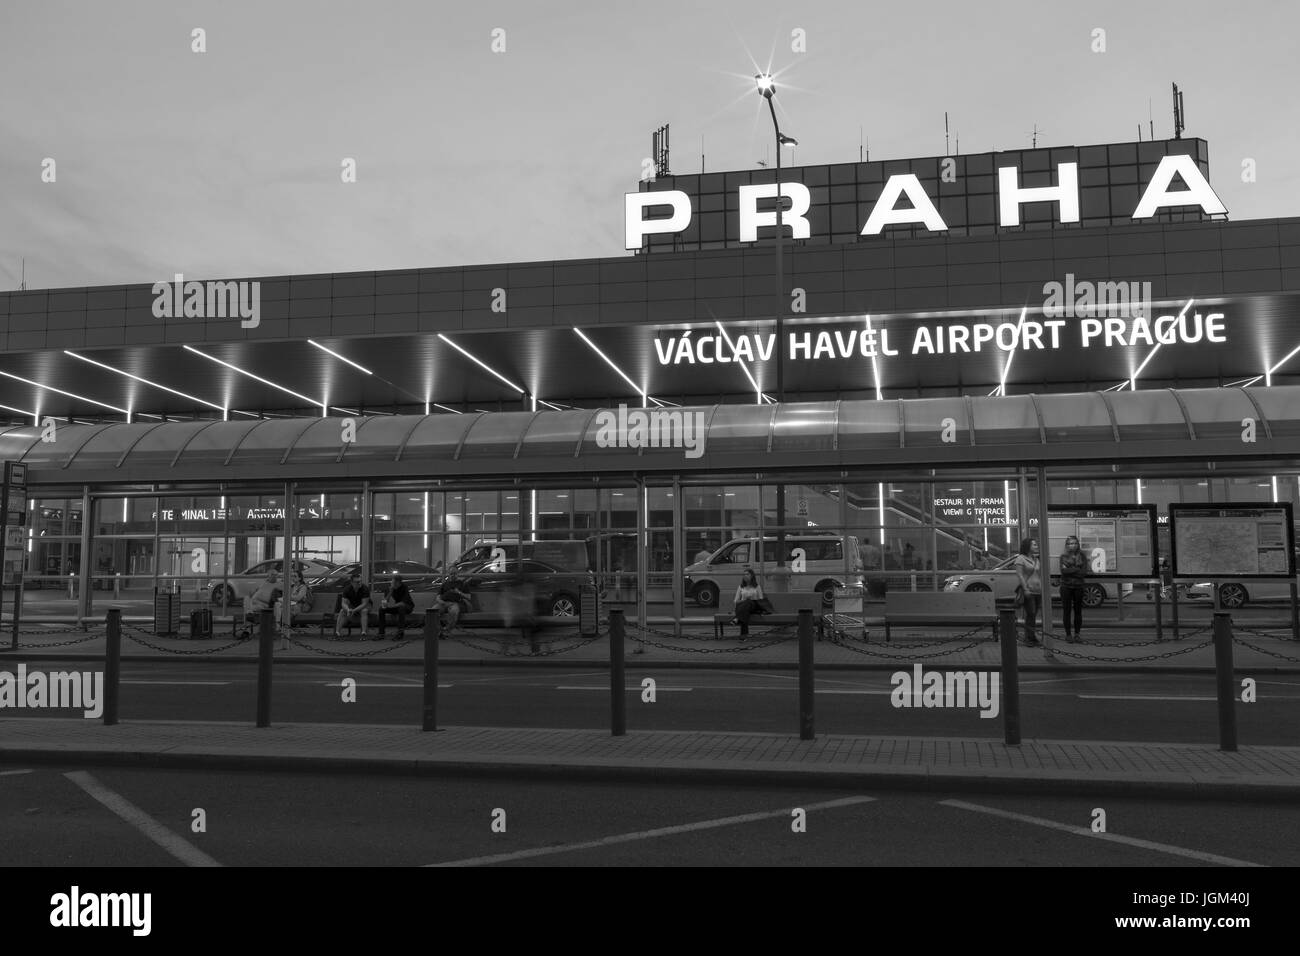 Prag, Tschechische Republik - 6. Juli 2017: Vaclav Havel Flughafen Prag - Terminal 1 Hauptgebäude Exterion in der Nacht vom 6. Juli 2017 in Prag, Tschechische Rep. Stockfoto